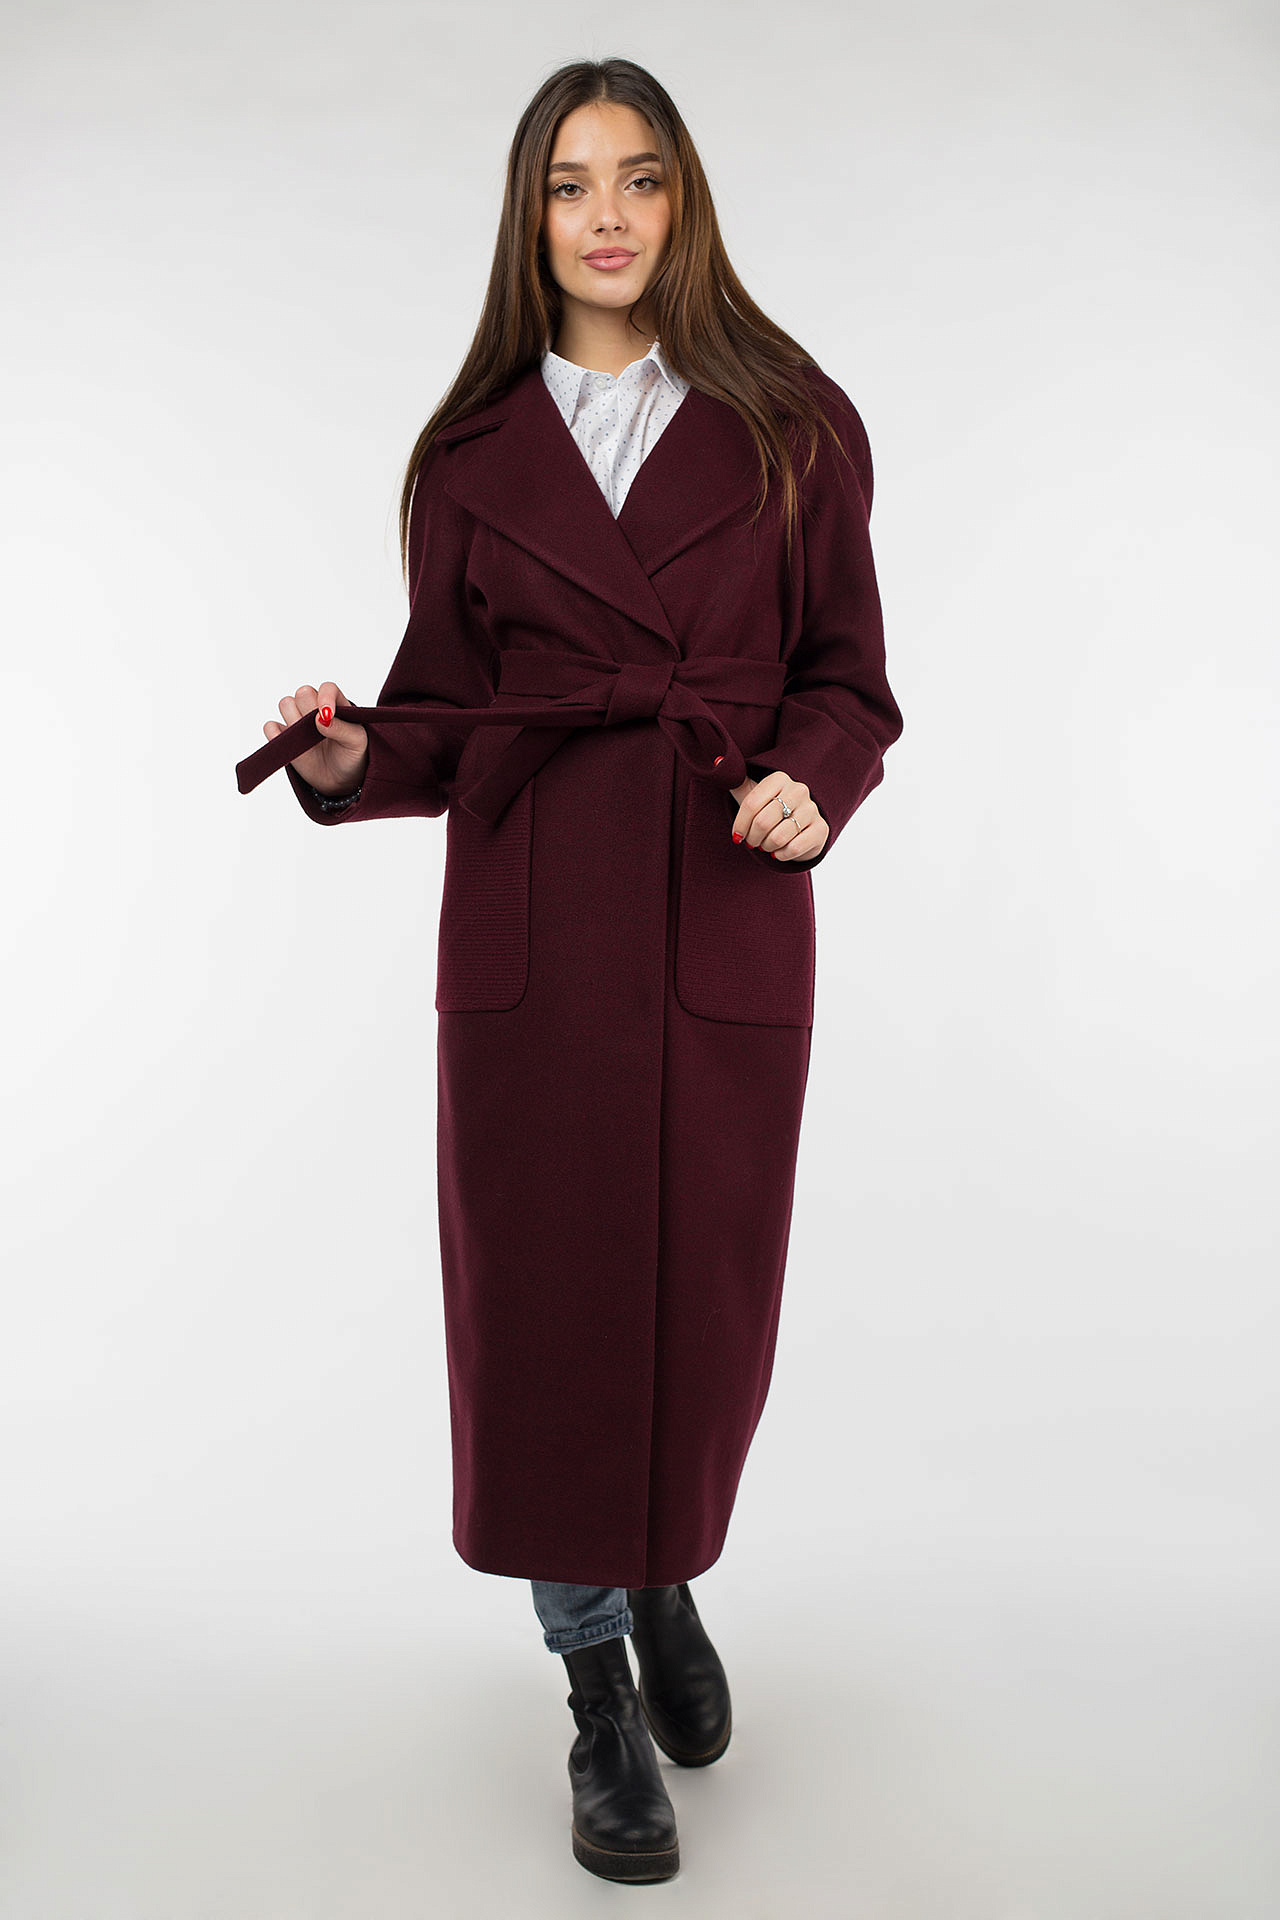 Пальто женское кашемировое бордо 2020